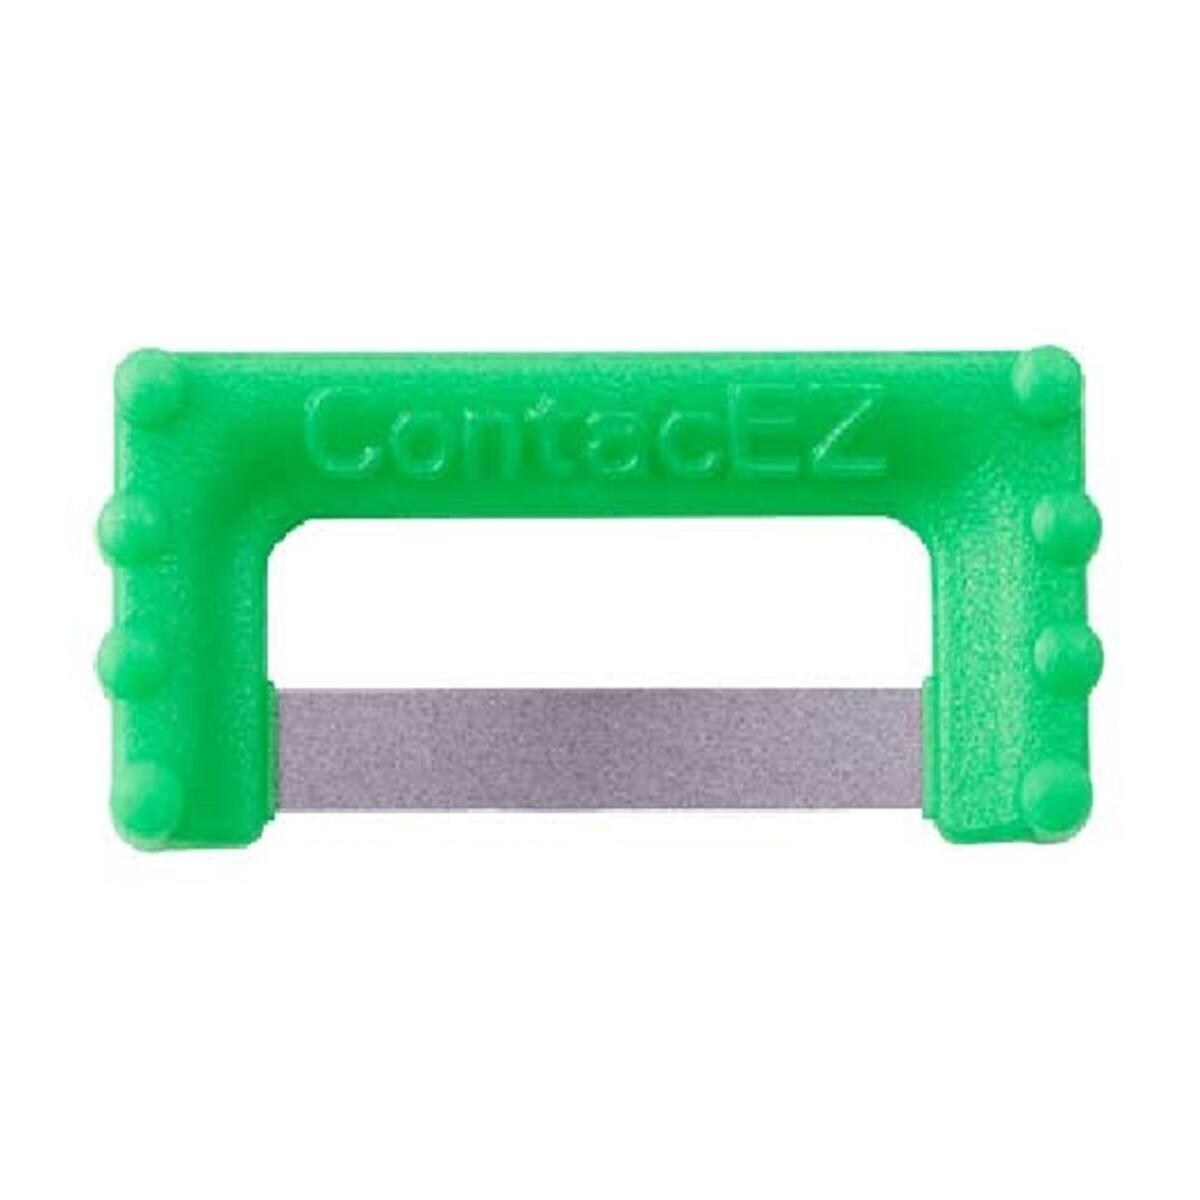 ContacEZ IPR - navulling - REF. 32616 - Groen 0,20mm, 16 stuks